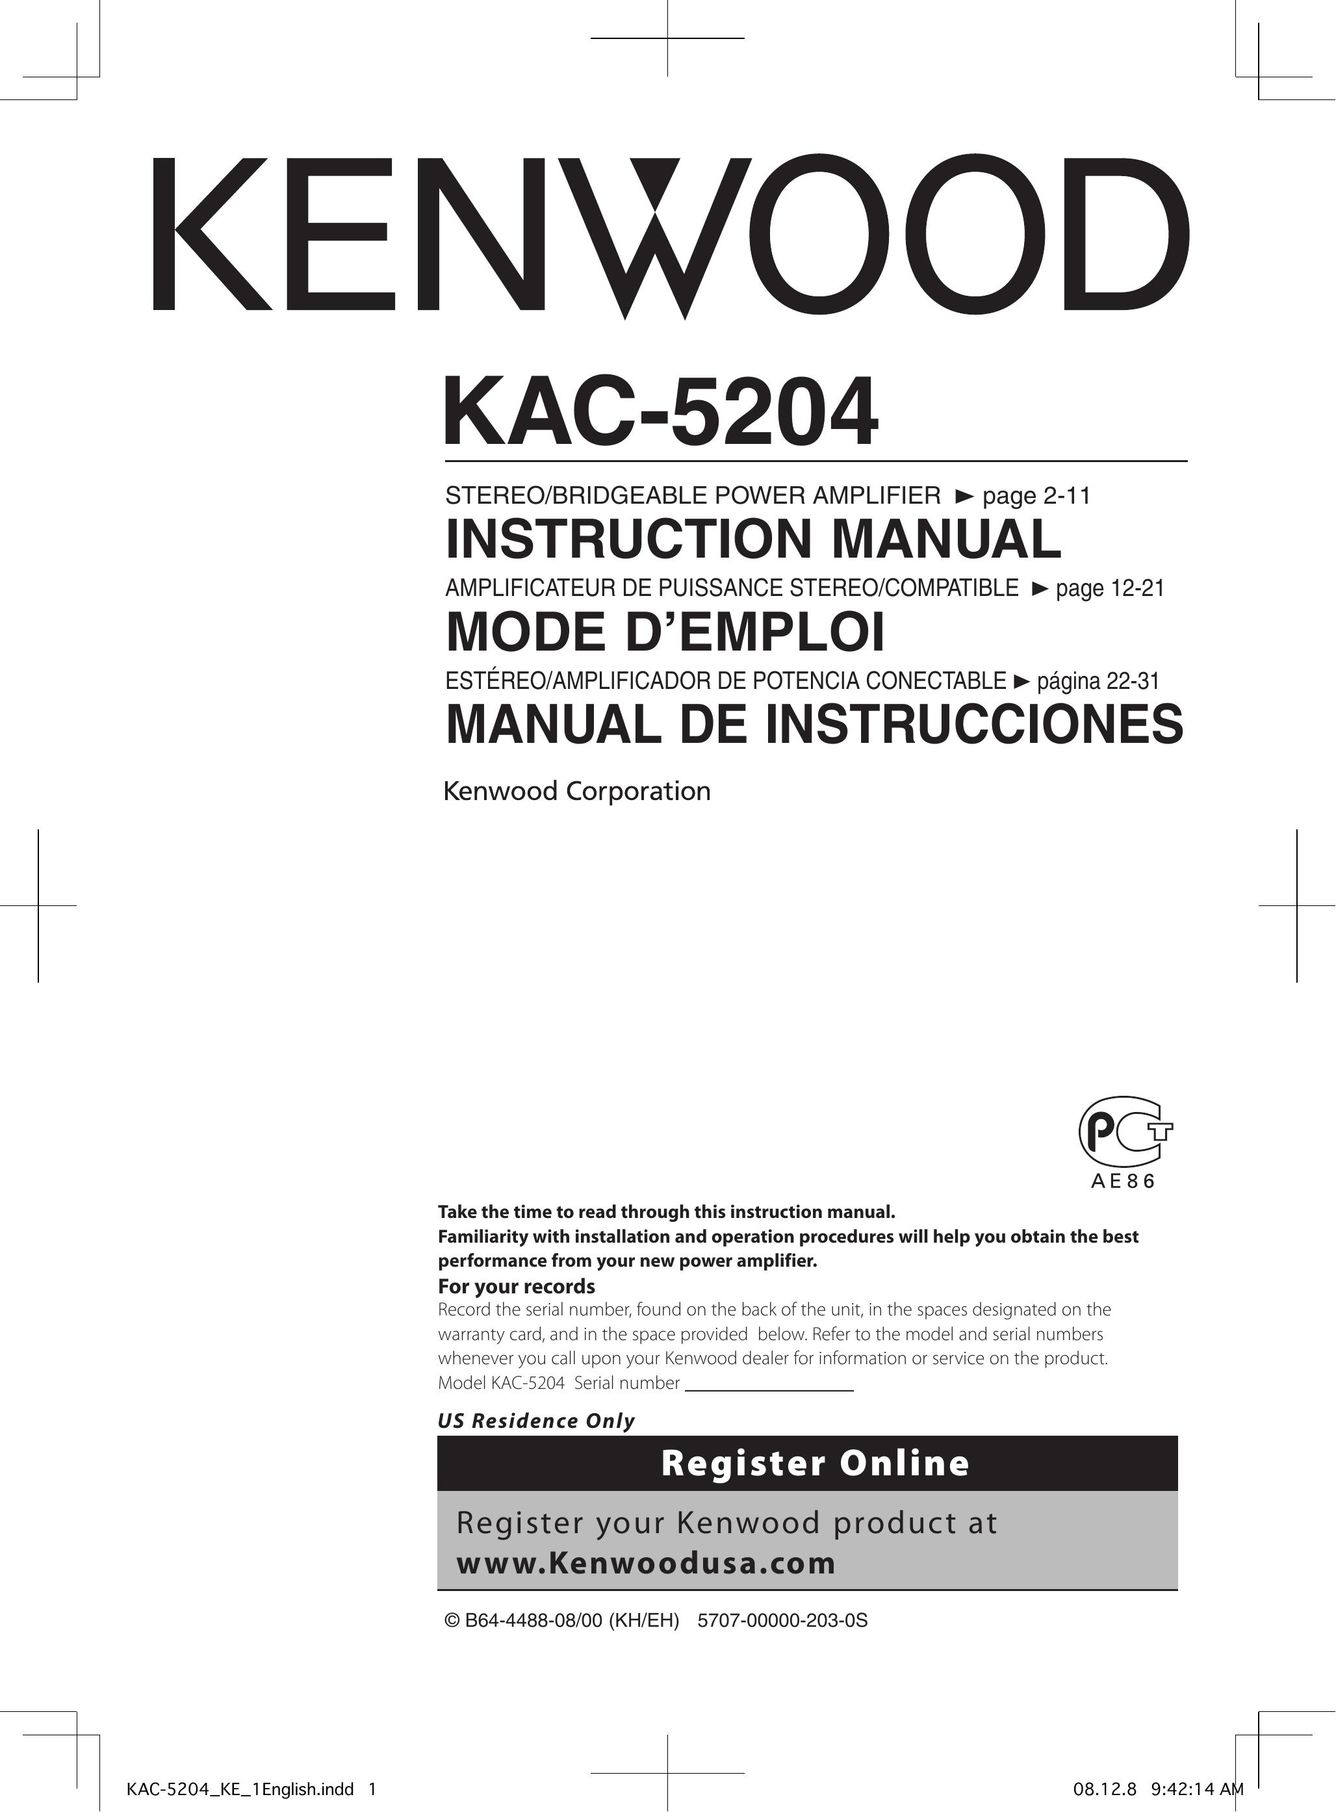 Kenwood KAC-5204 Stereo Amplifier User Manual